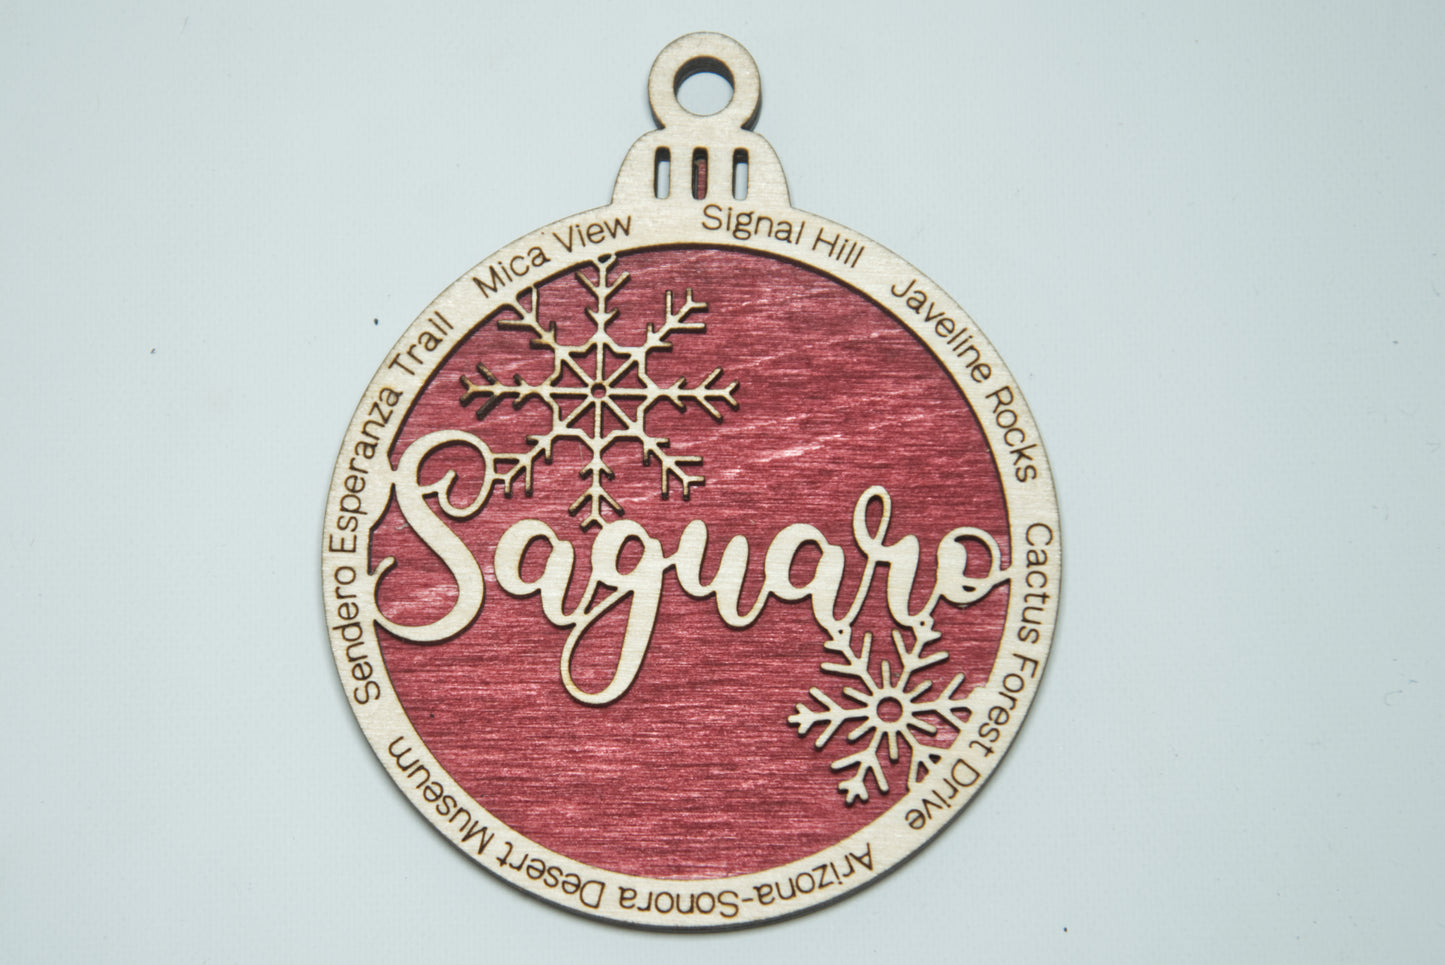 Saguaro National Park Christmas Ornament